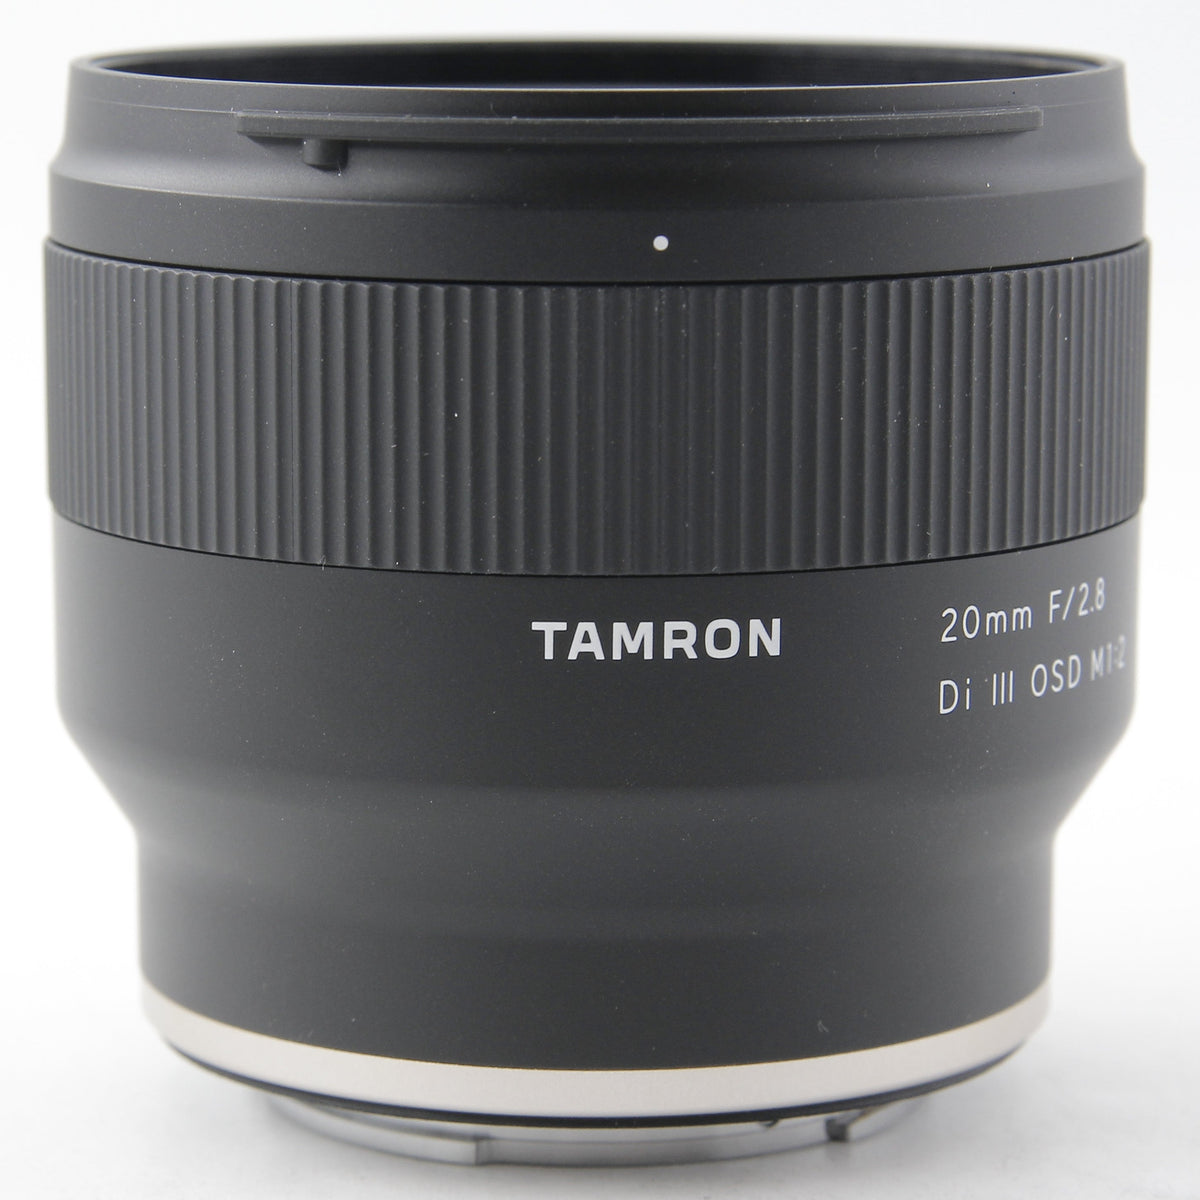 TAMRON/20mm F2.8 Di III OSD M1:2TAMRON - レンズ(単焦点)